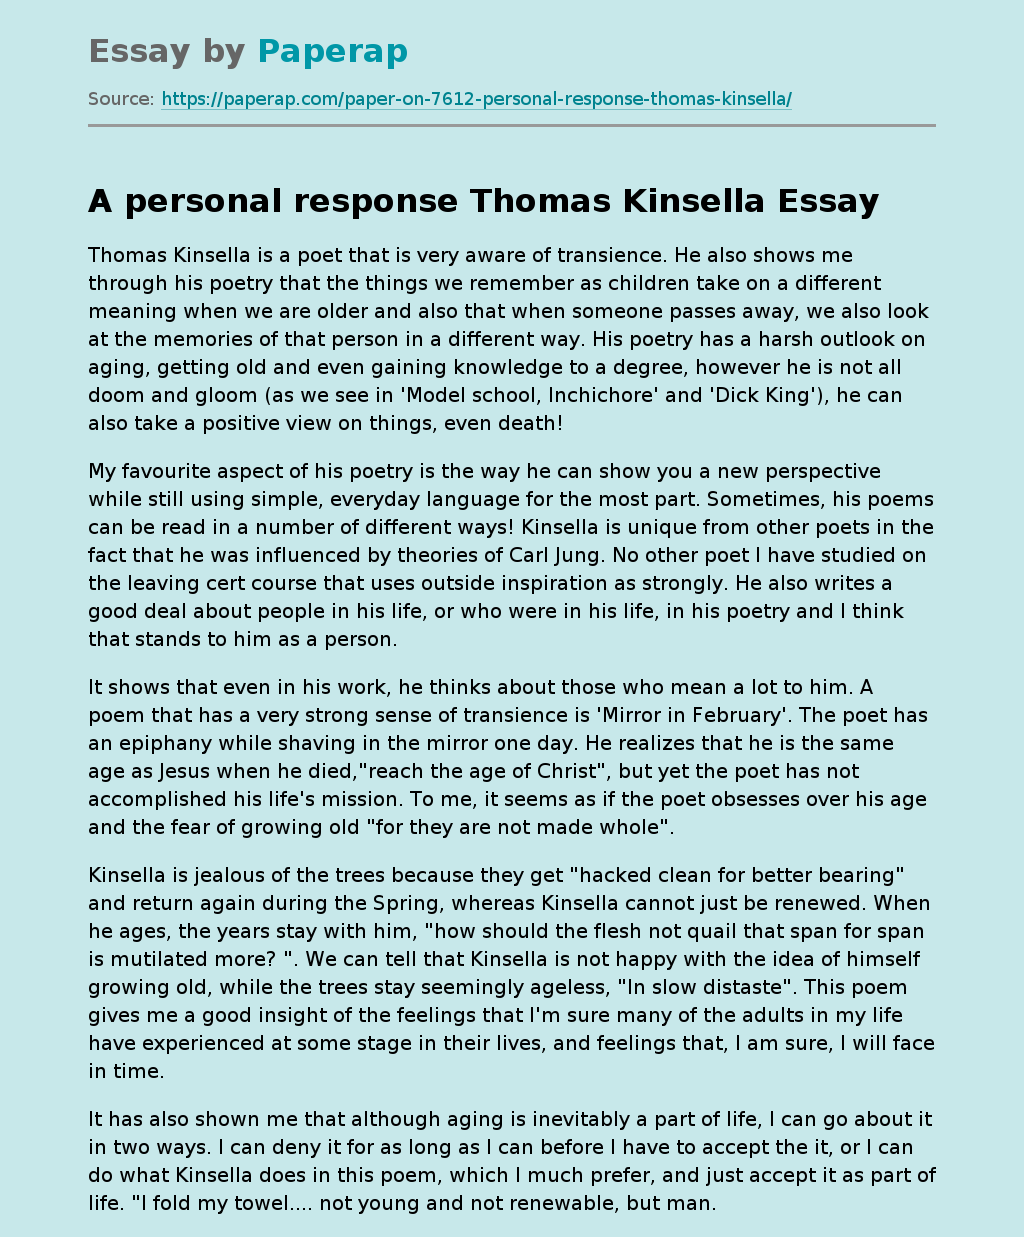 A personal response Thomas Kinsella